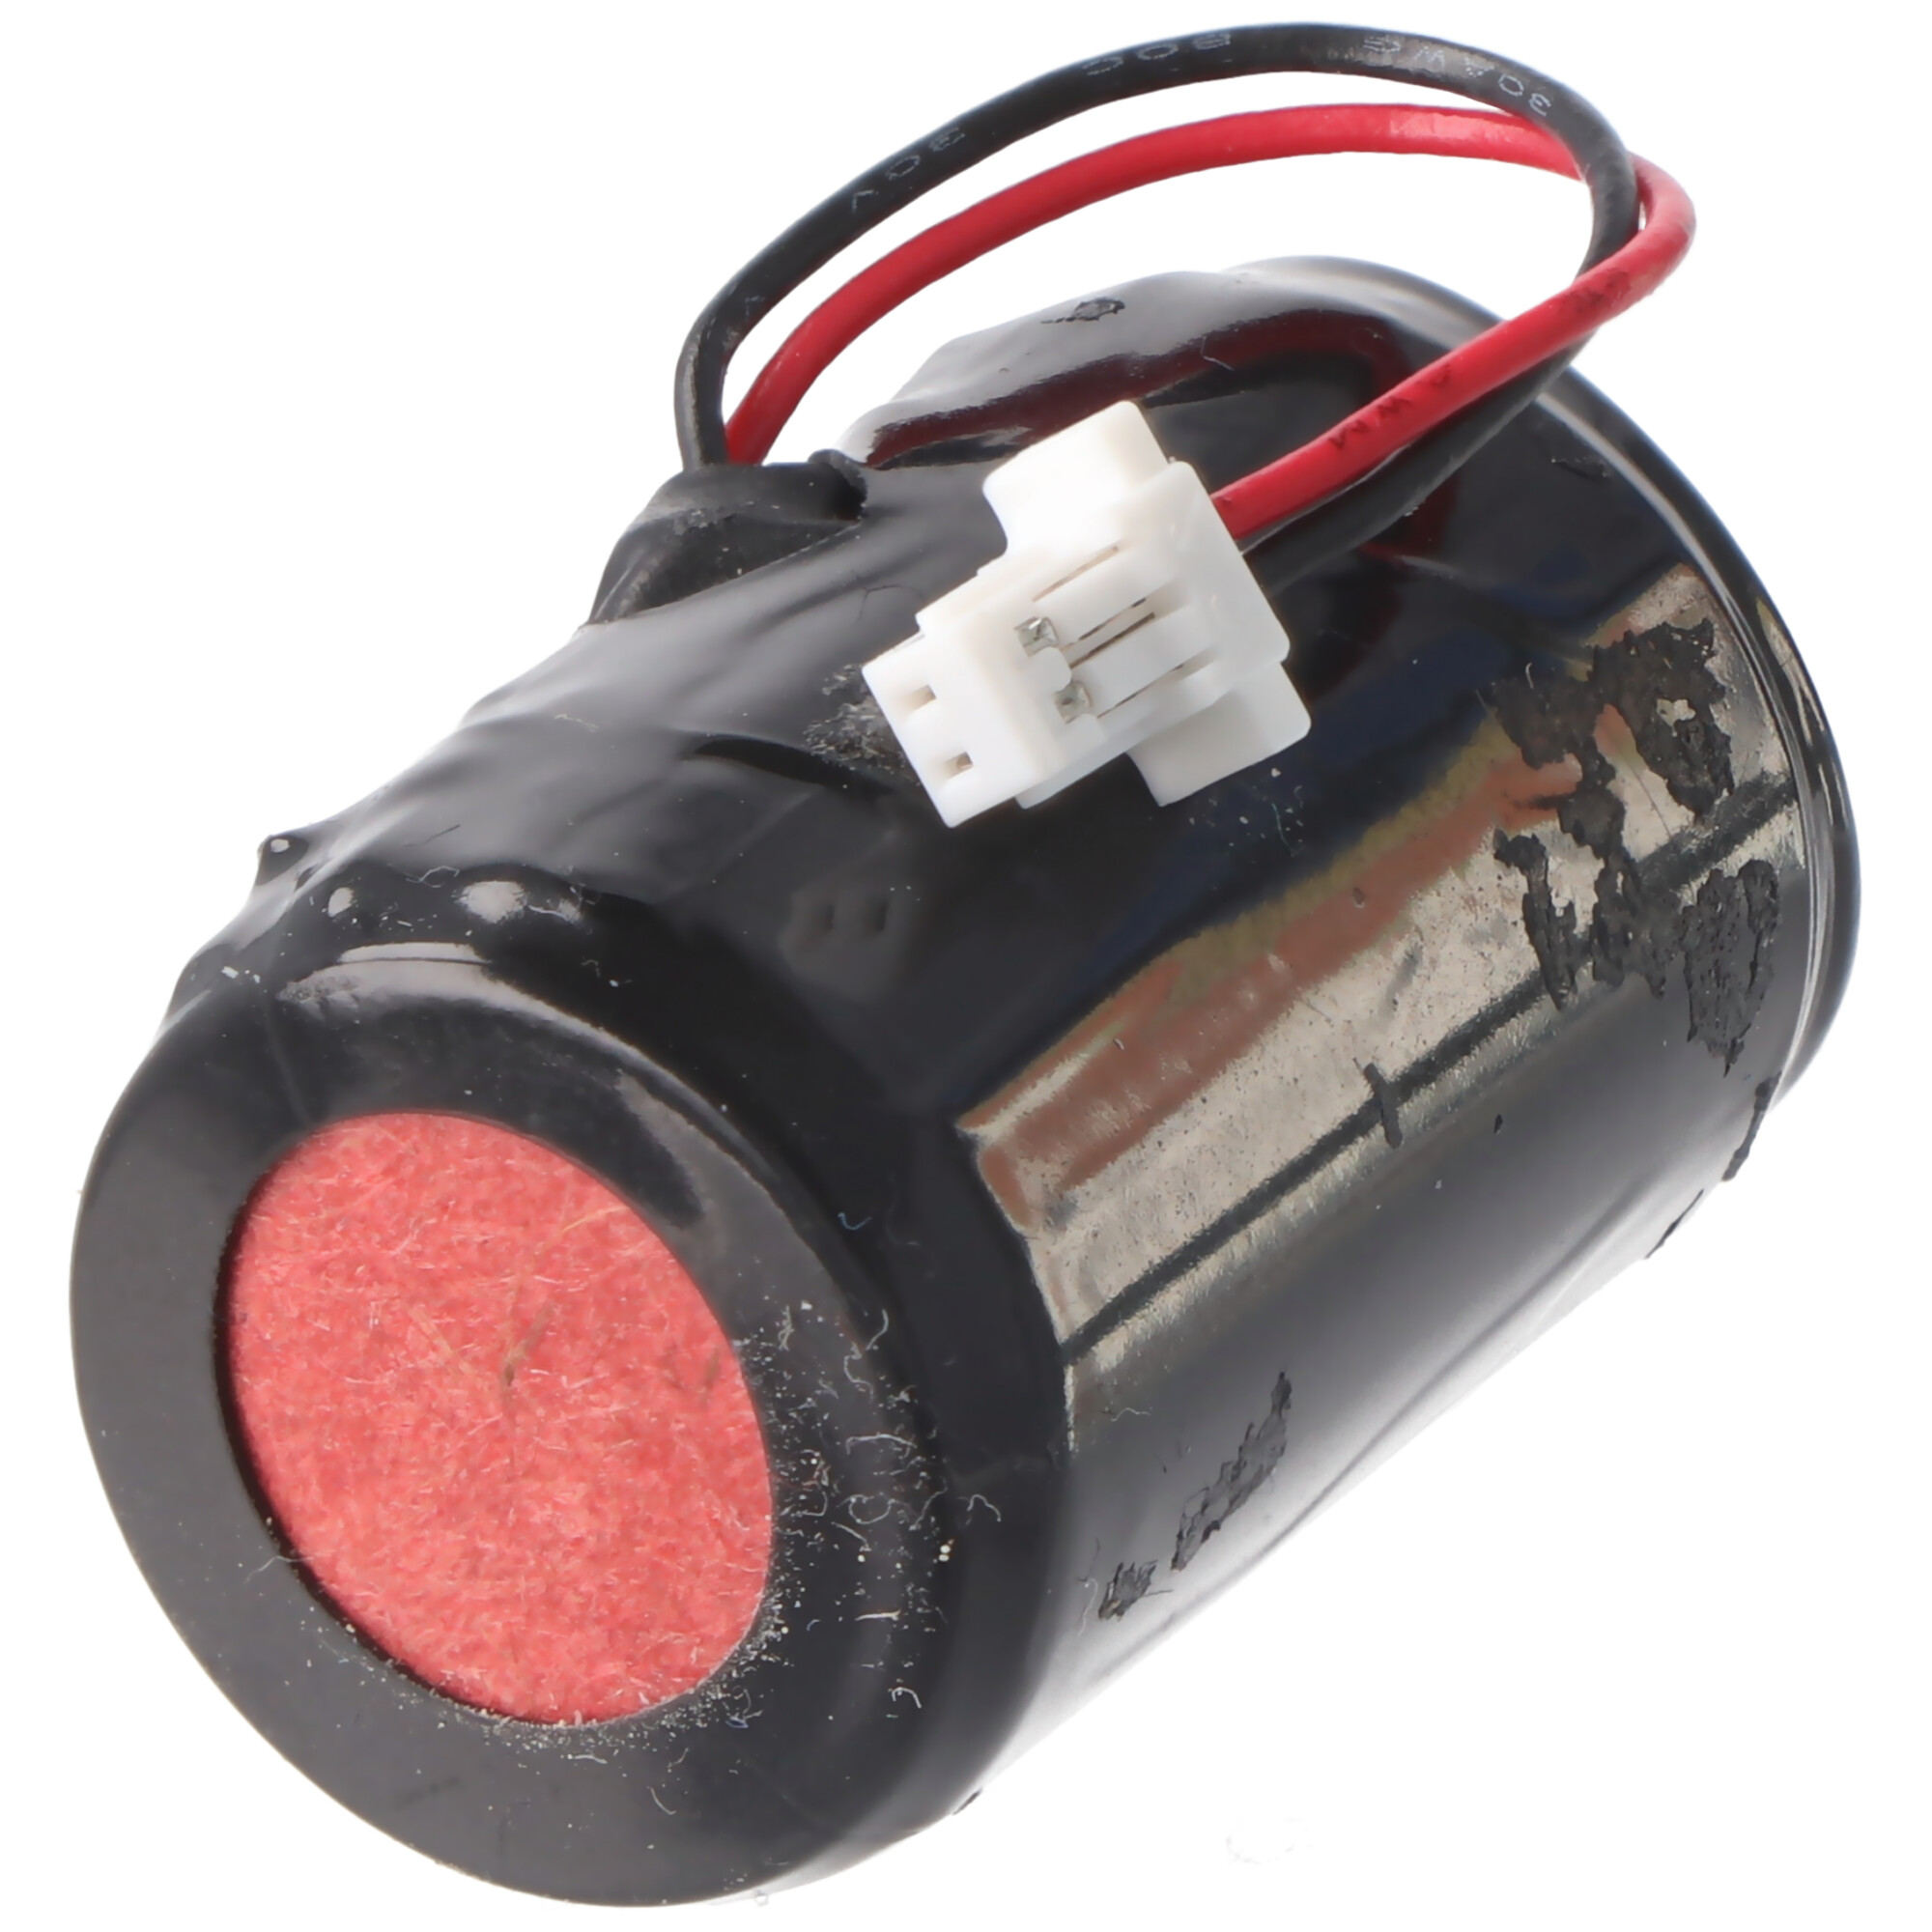 Saft Lithium 3,6V Batterie LS14250 mit Kabel und Stecker mittig an der Zelle raus